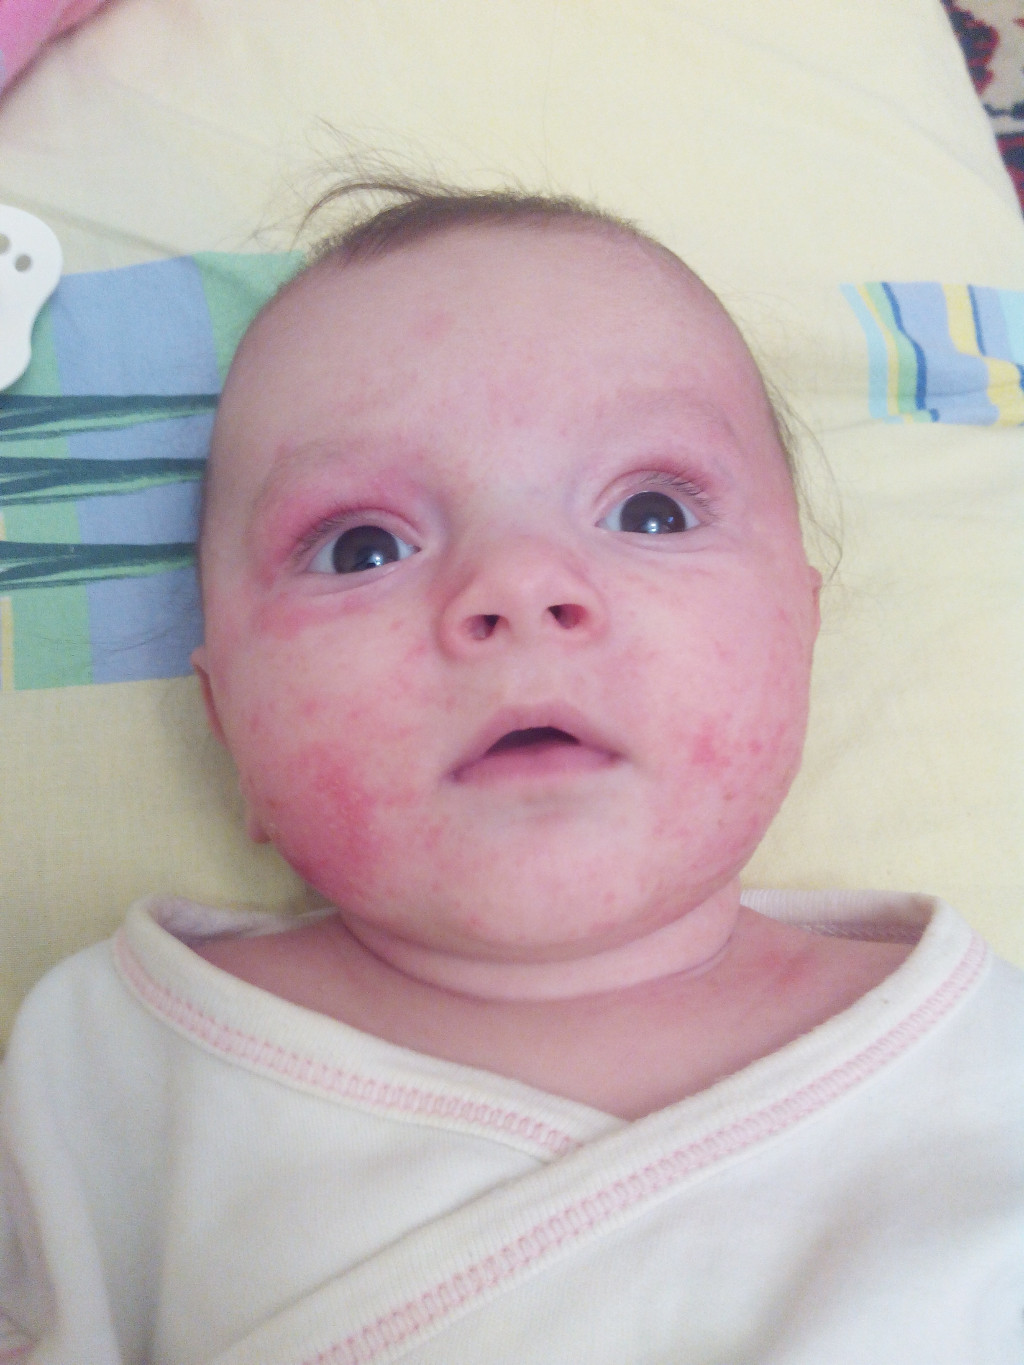 Атопический дерматит у детей фото